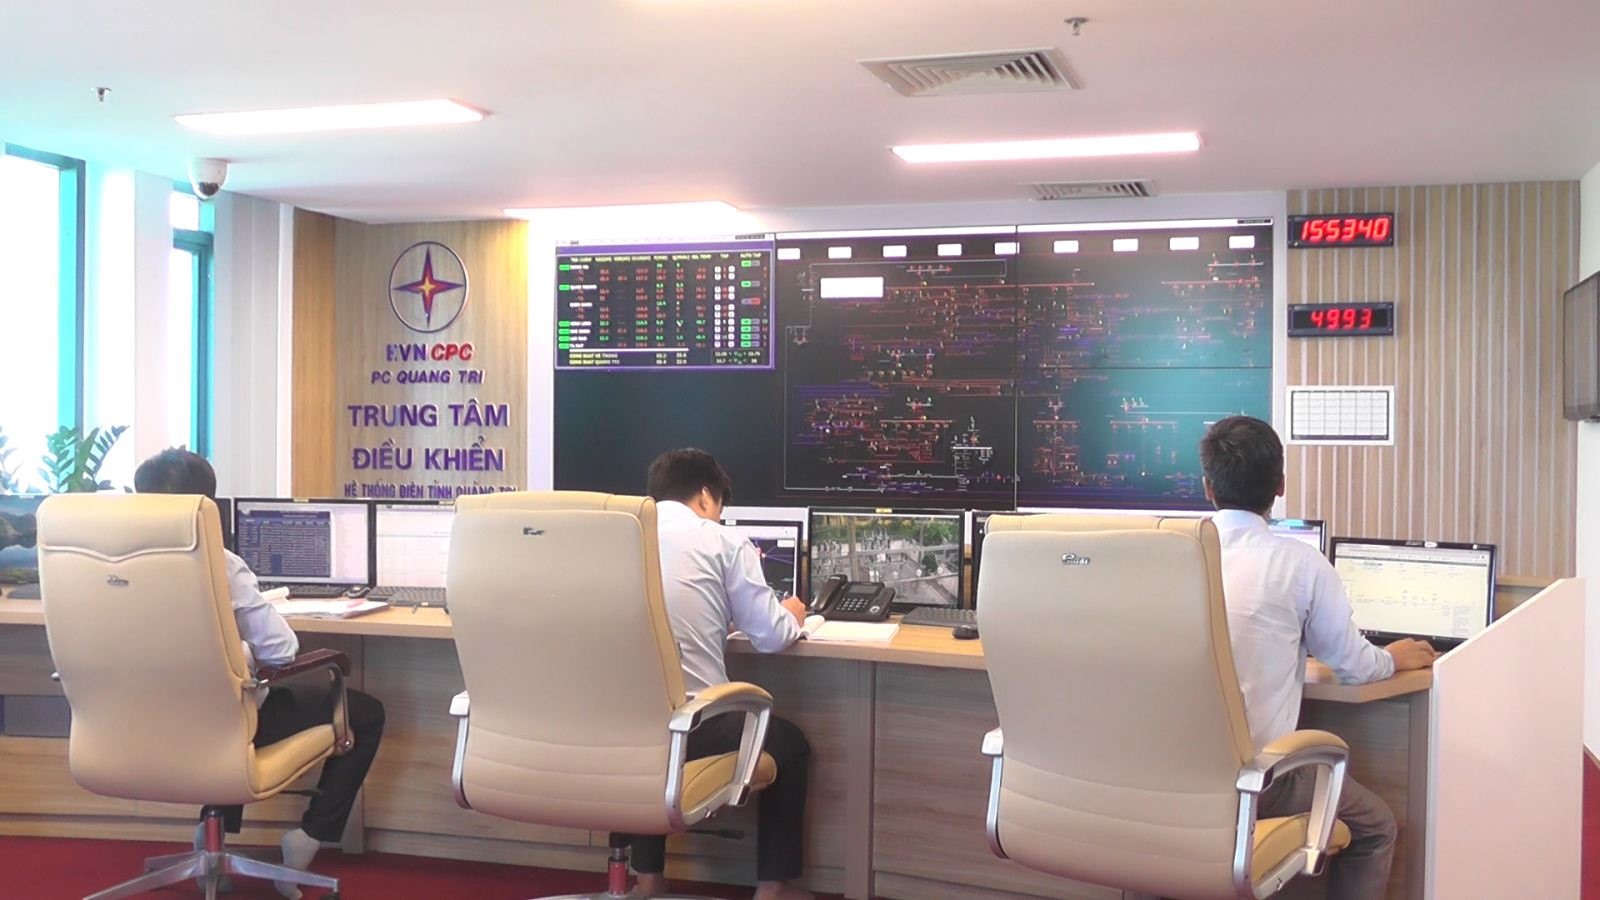 Trung tâm điều khiển hệ thống lưới điện Quảng Trị